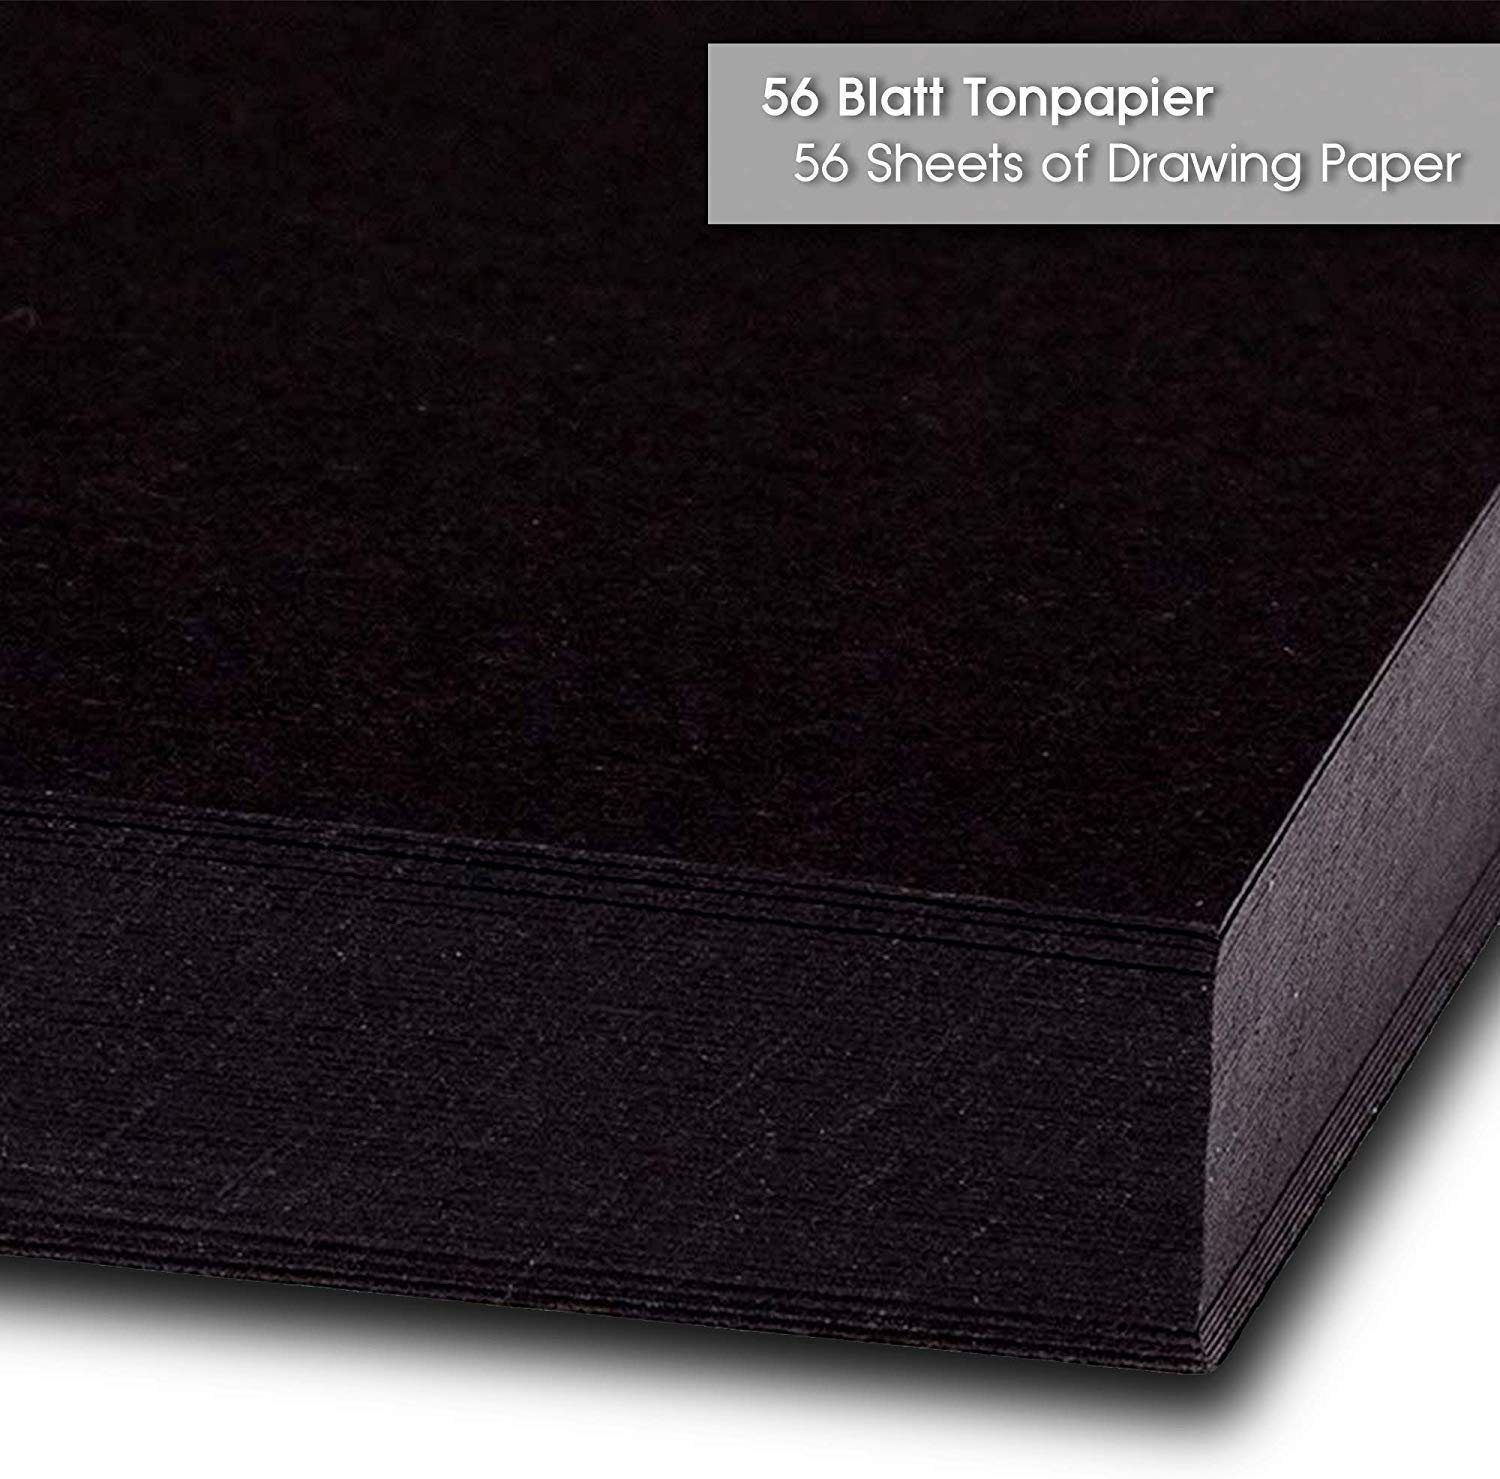 Tritart Blatt A3 Tonpapier Aquarellpapier Schwarzes 130g/m², 56